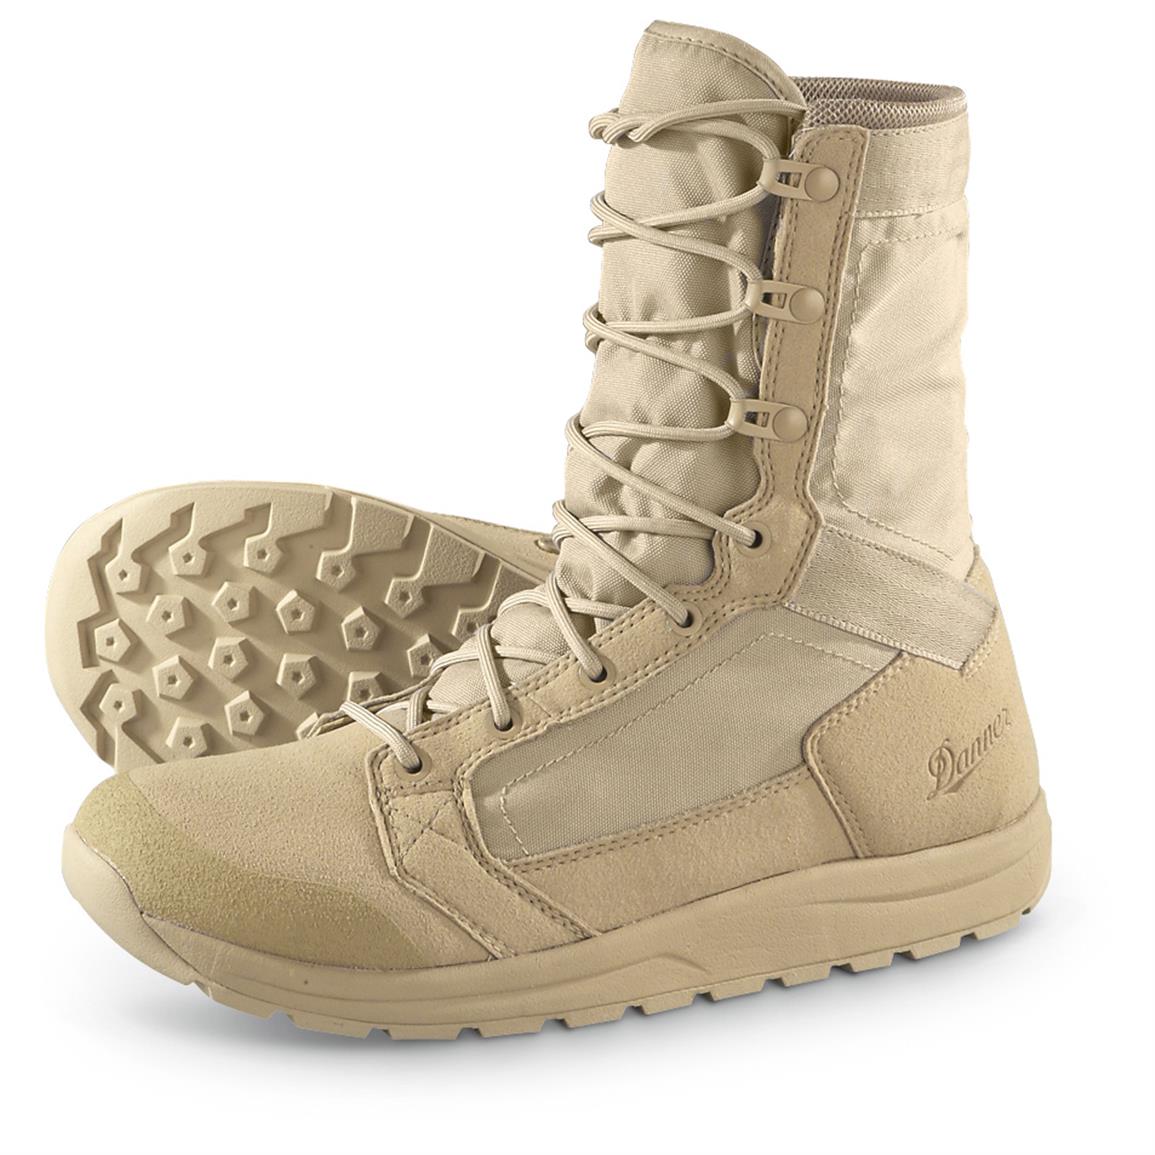 Danner Tachyon Men's 8" Tan Military Boots - 643163, Combat & Tactical